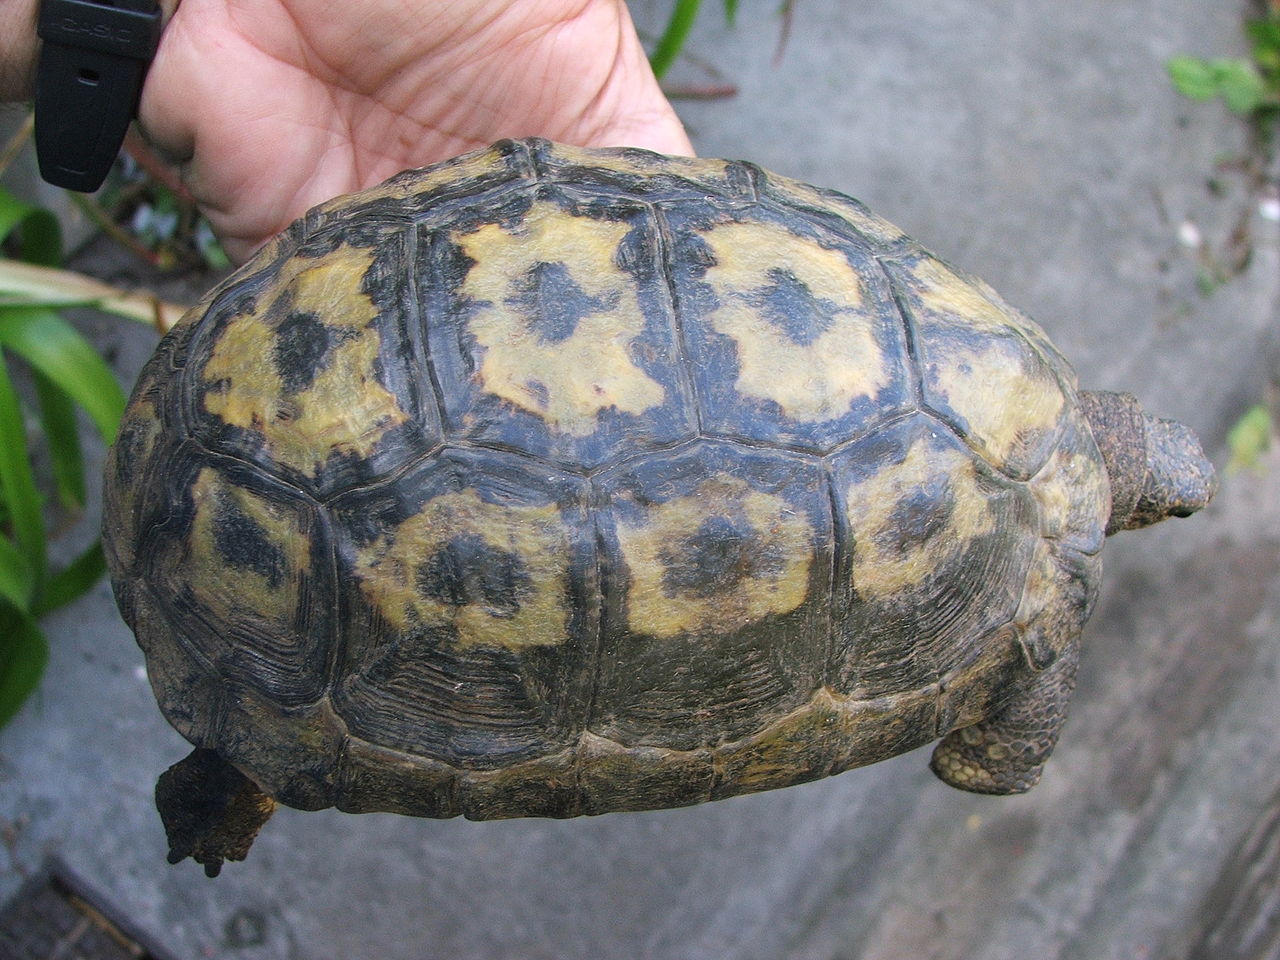 Female Chersina angulata tortoise